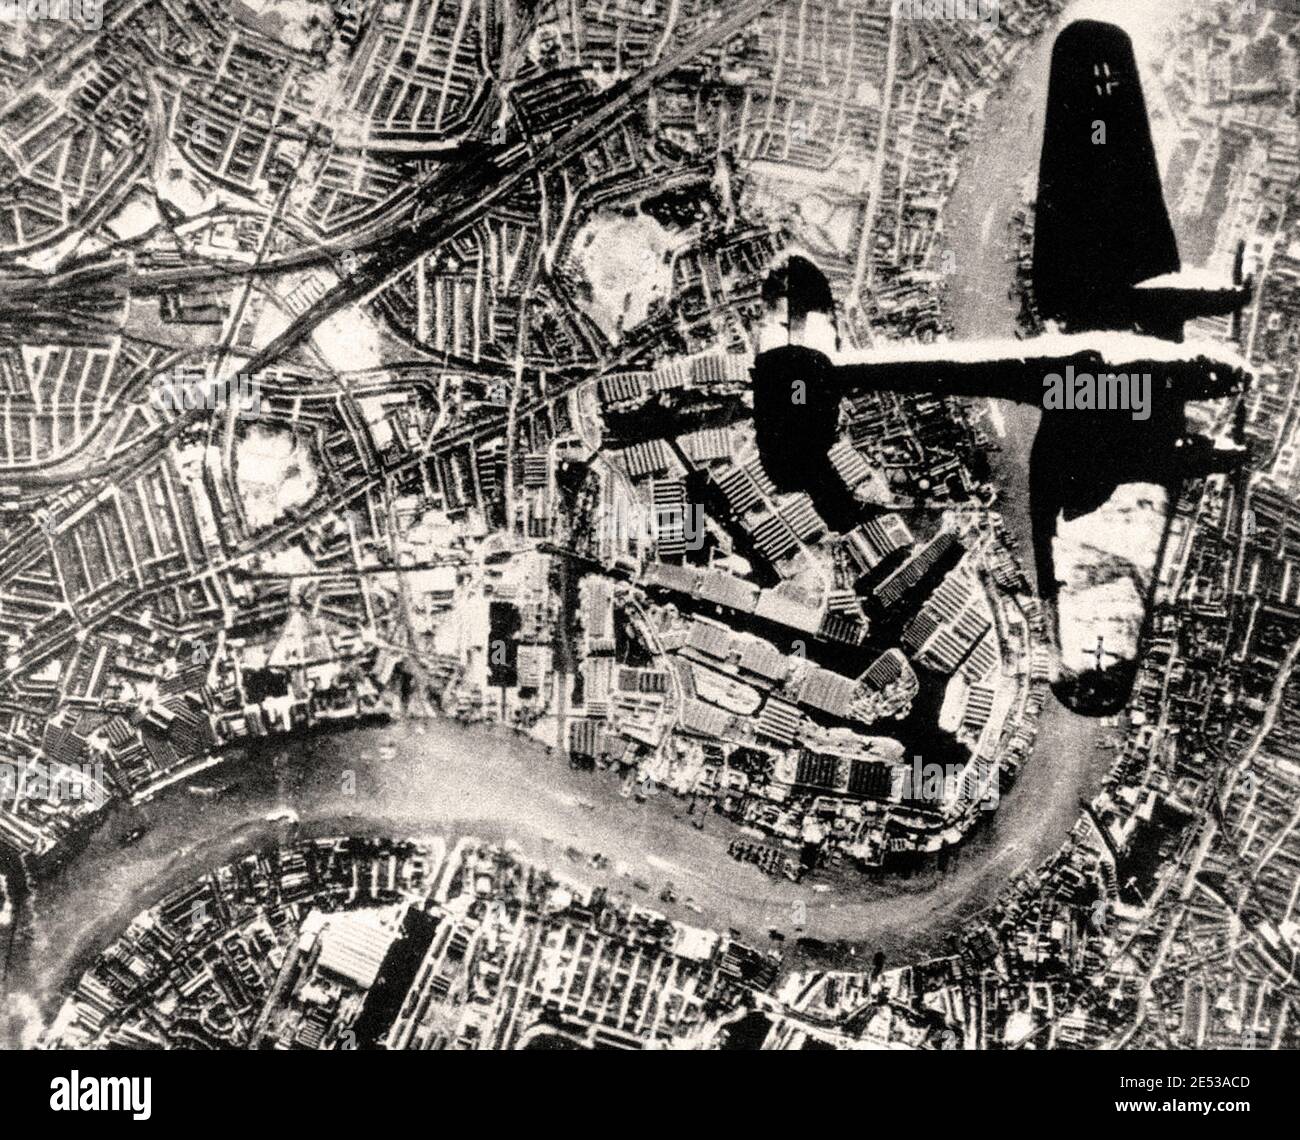 Un Heinkel nazista He 111 bombardiere sorvola Londra nell'autunno del 1940. Il Tamigi attraversa l'immagine. Foto Stock